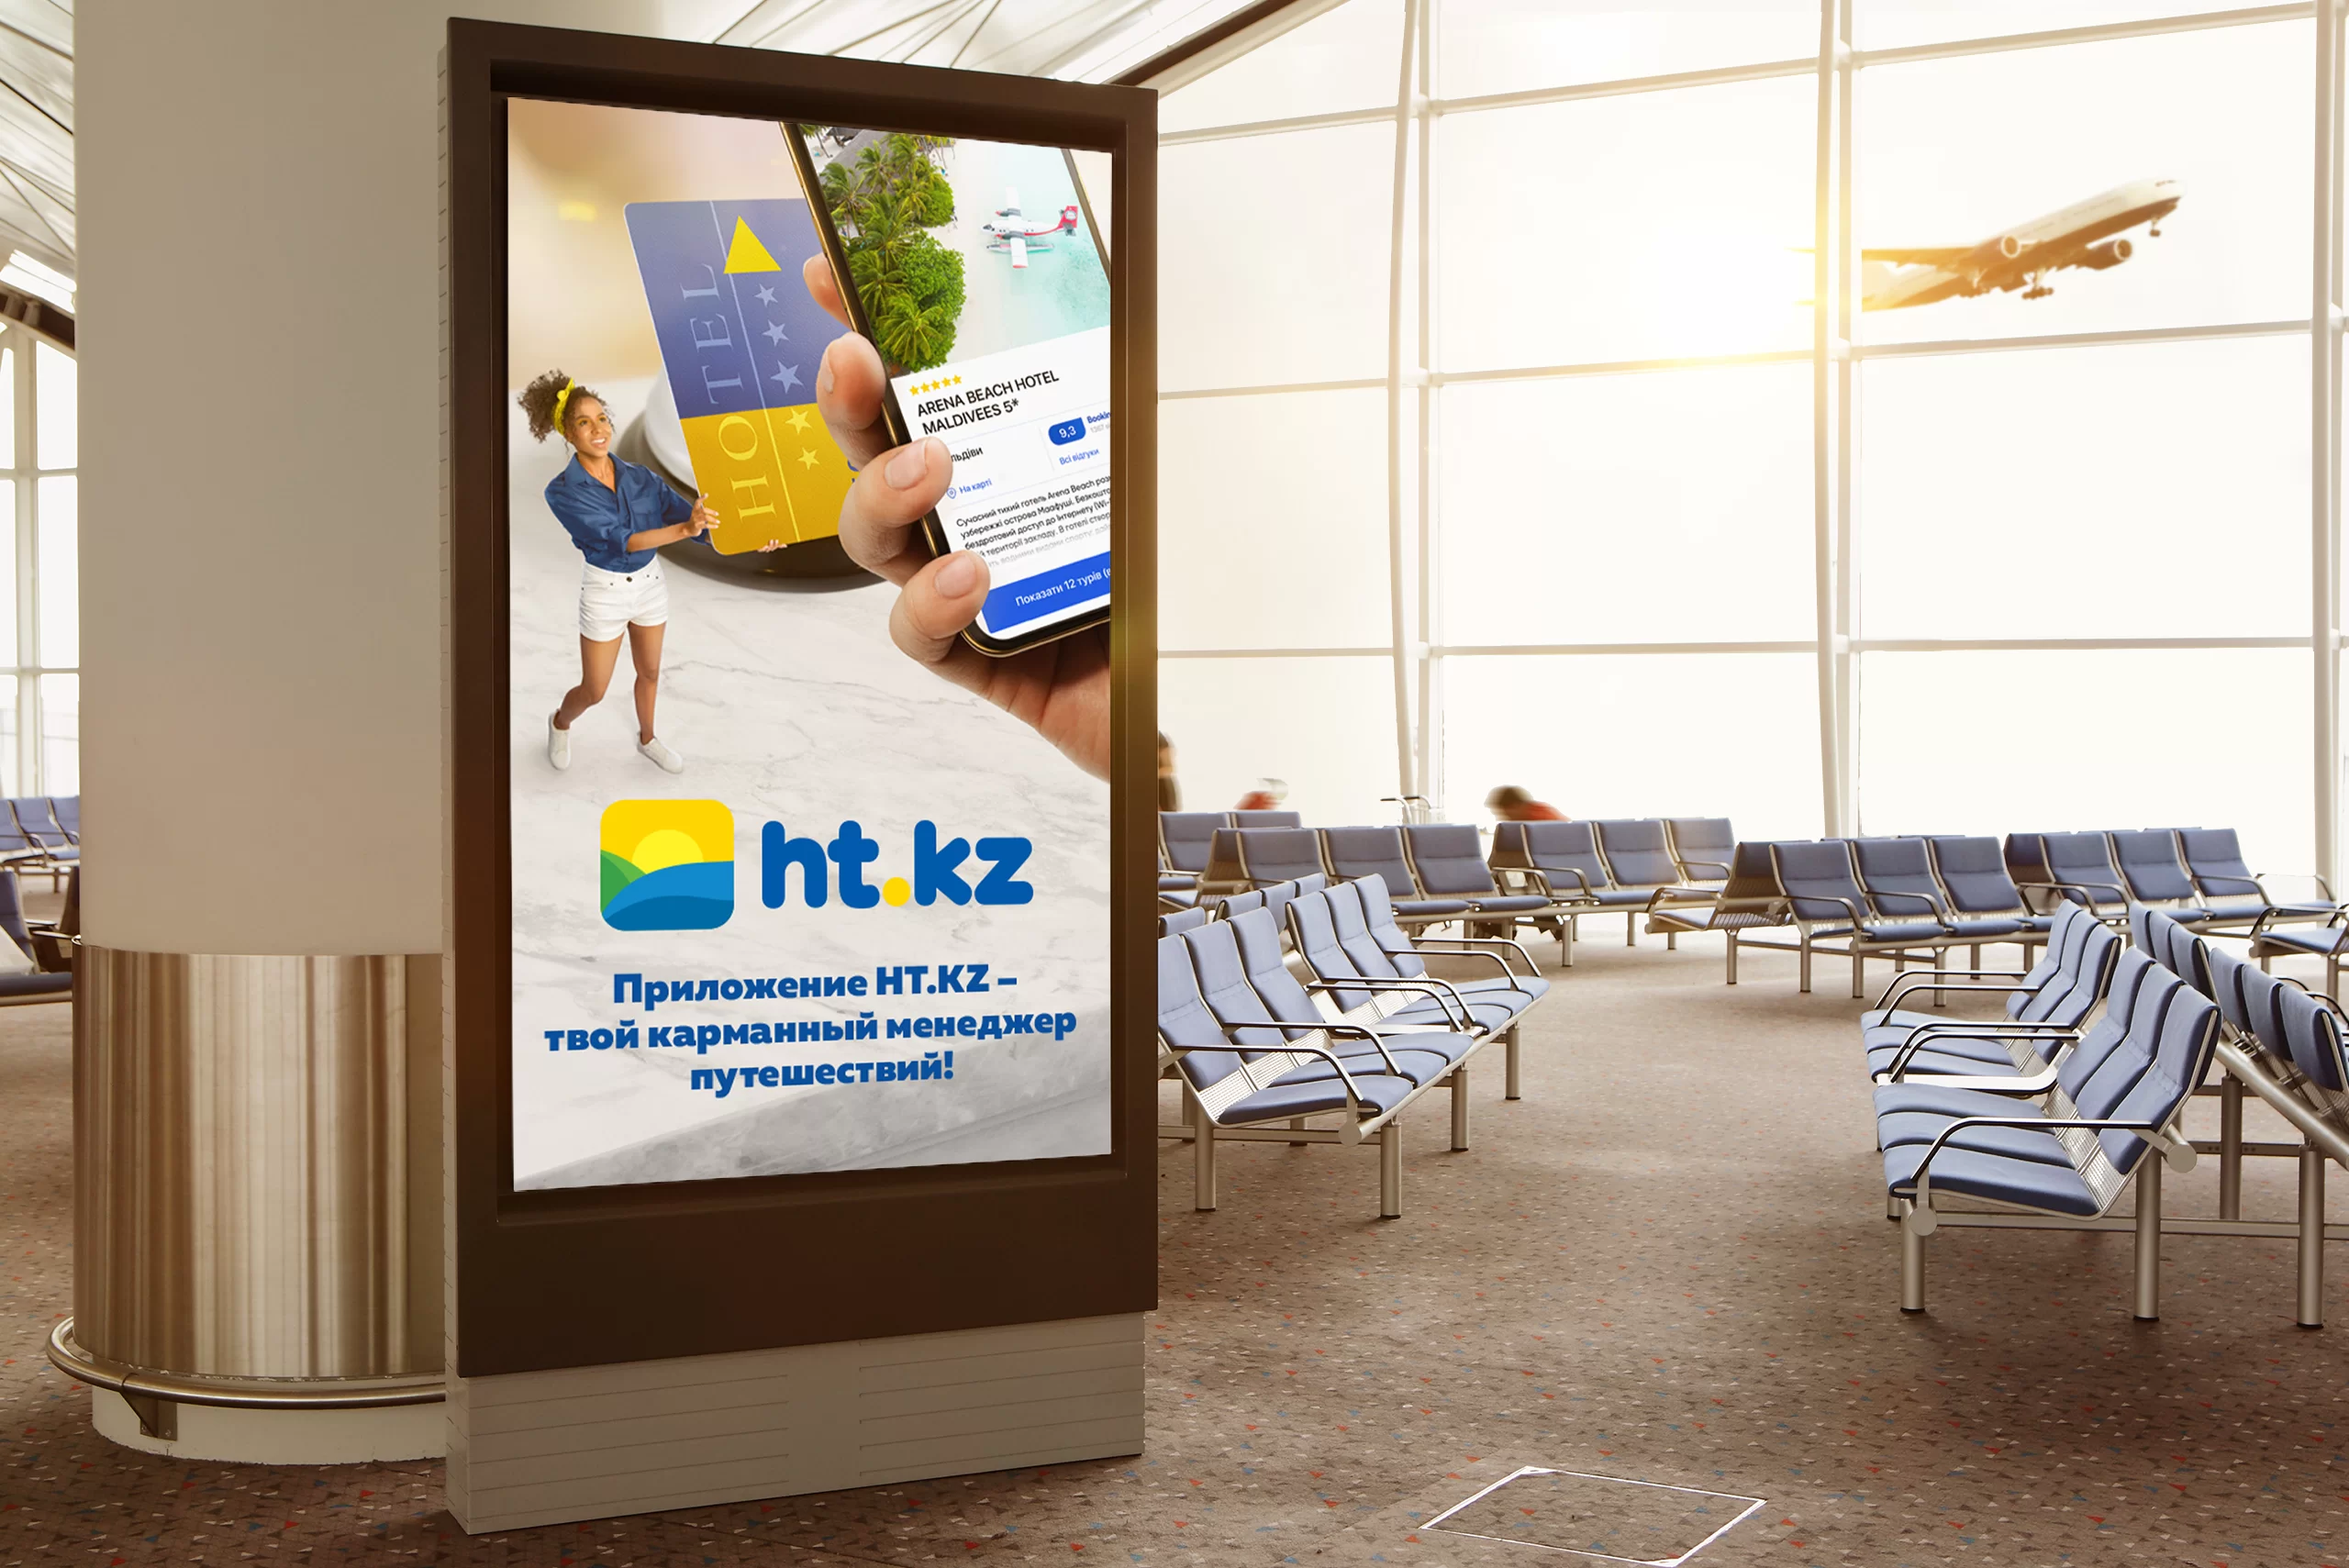 Реклама туристической фирмы HT.KZ